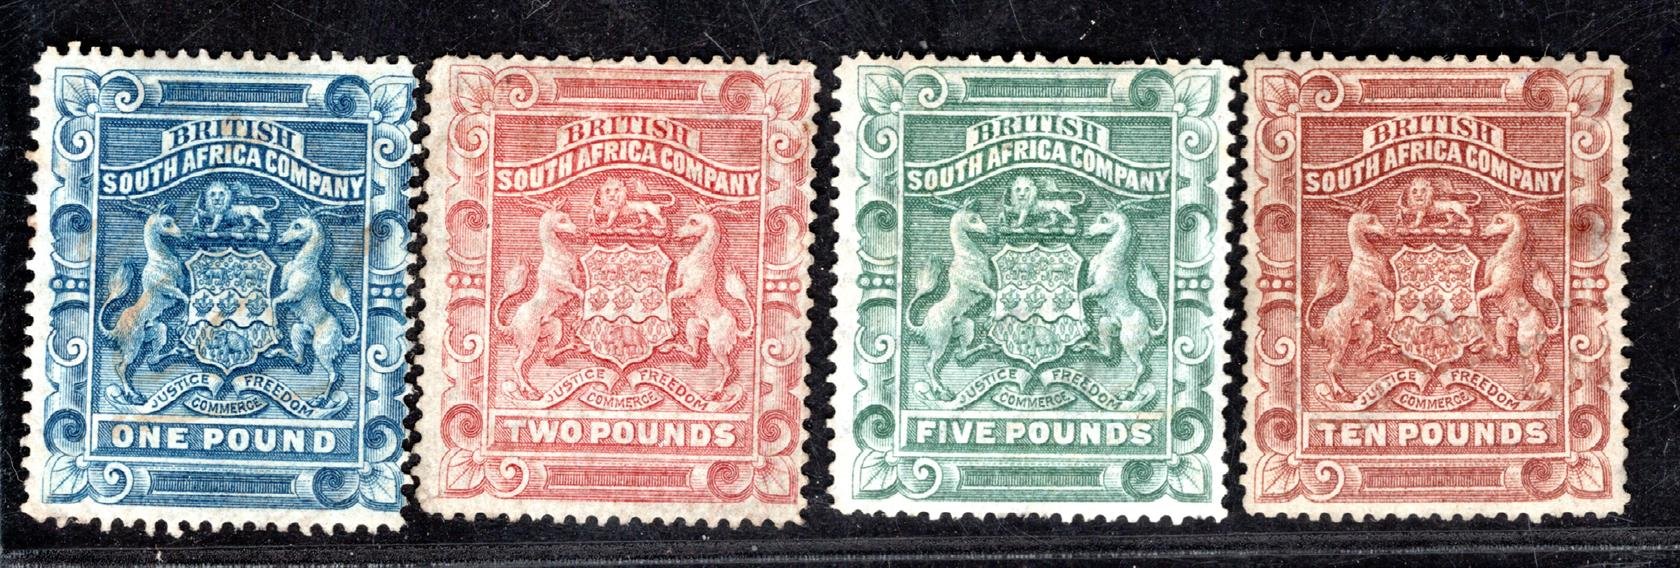  Rhodesie, SG 10-13, Znak, librové hodnoty 1-10 £, vzácné, část se zbytky lepu, kat. 5225 GBP